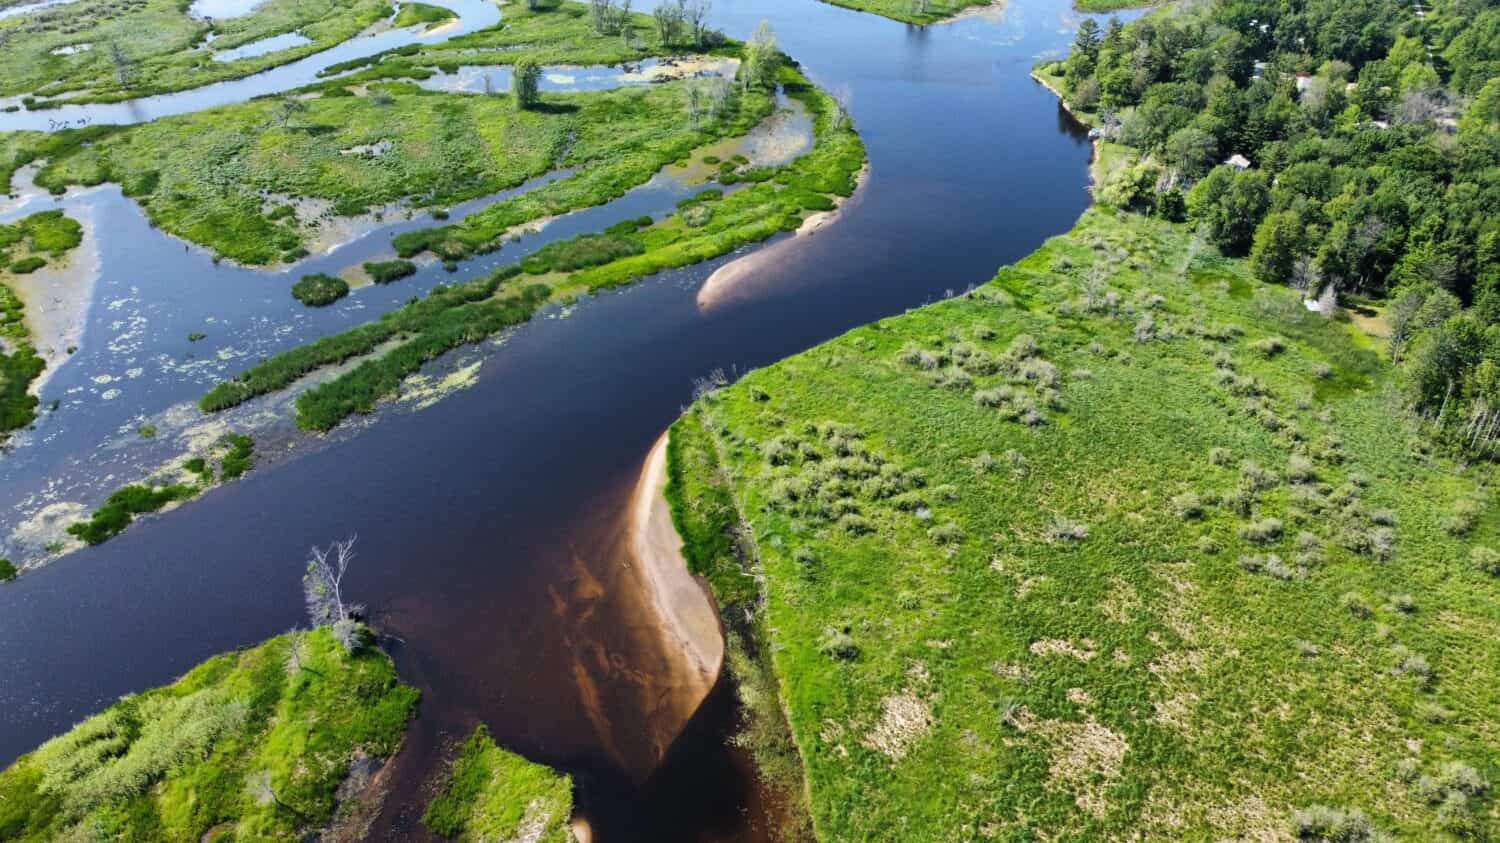 Peshtigo River. Quiet midday river from the air. 